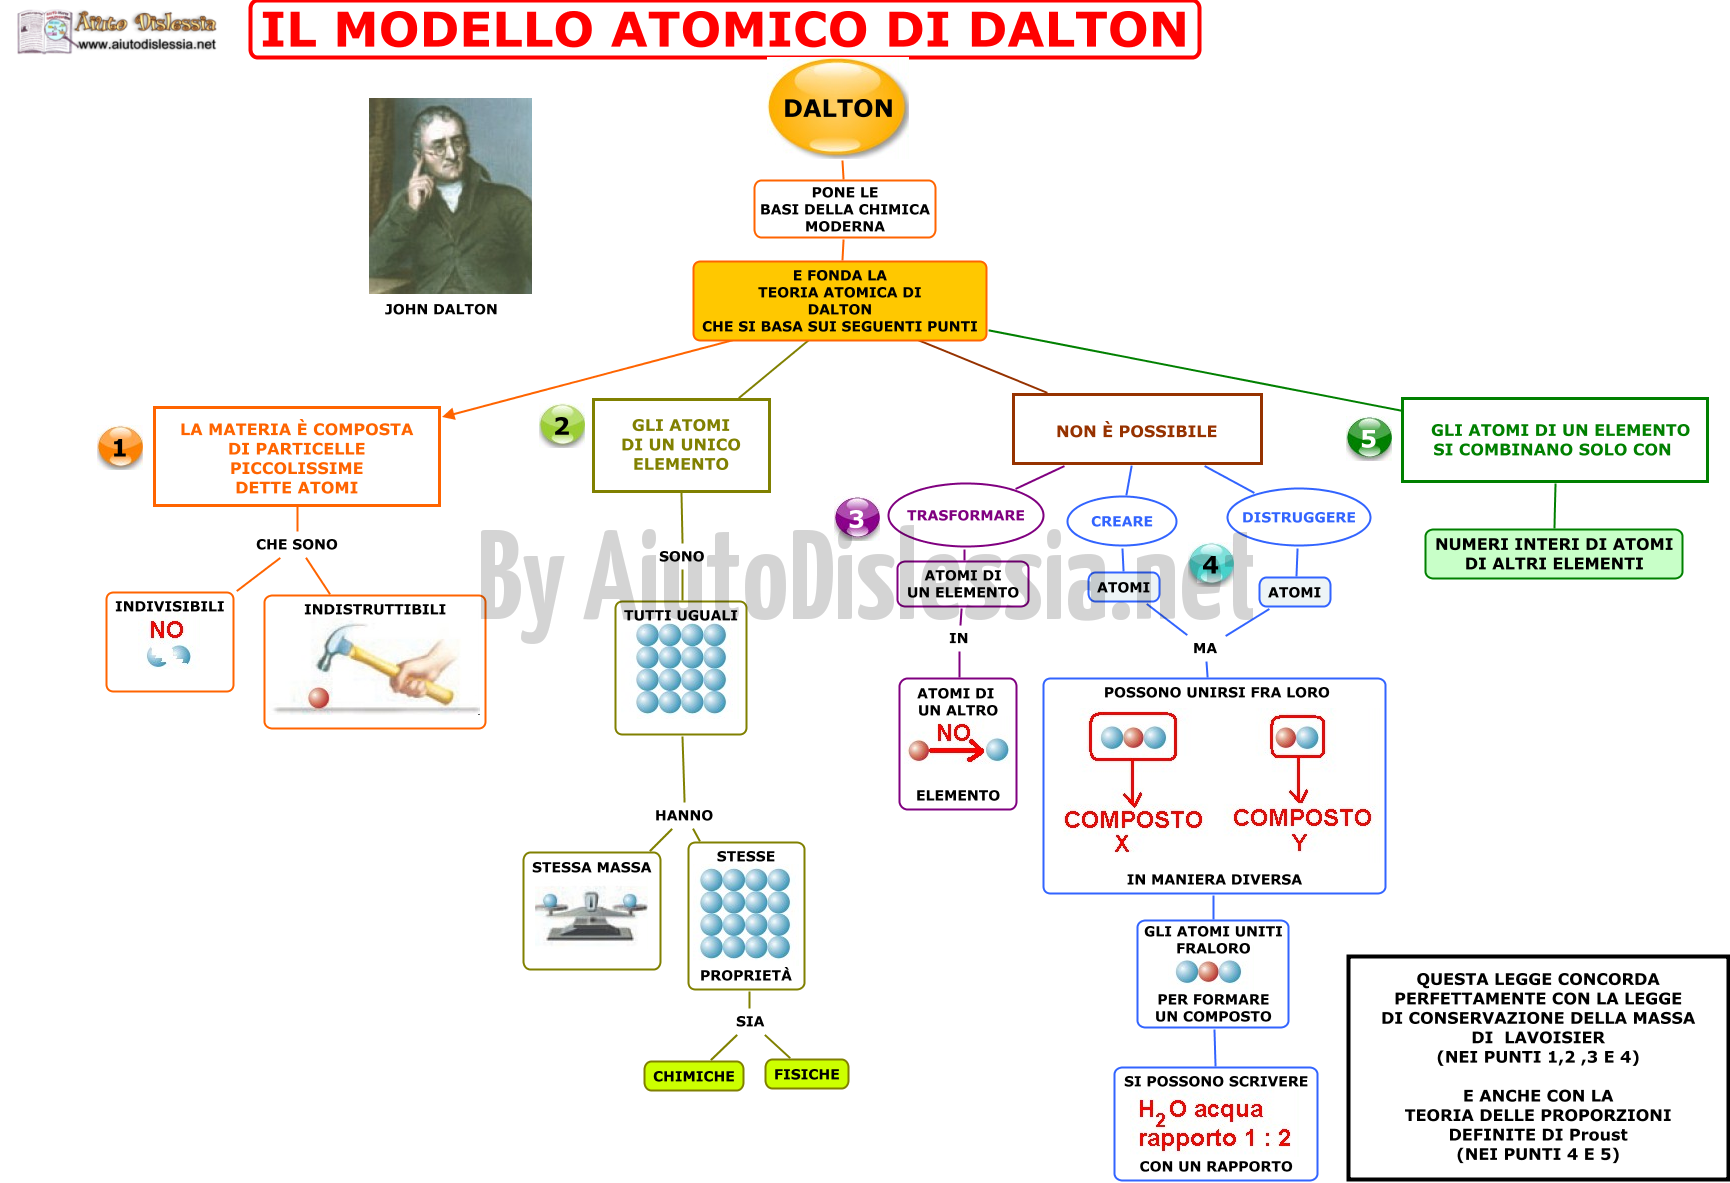 02. IL MODELLO ATOMICO DI DALTON